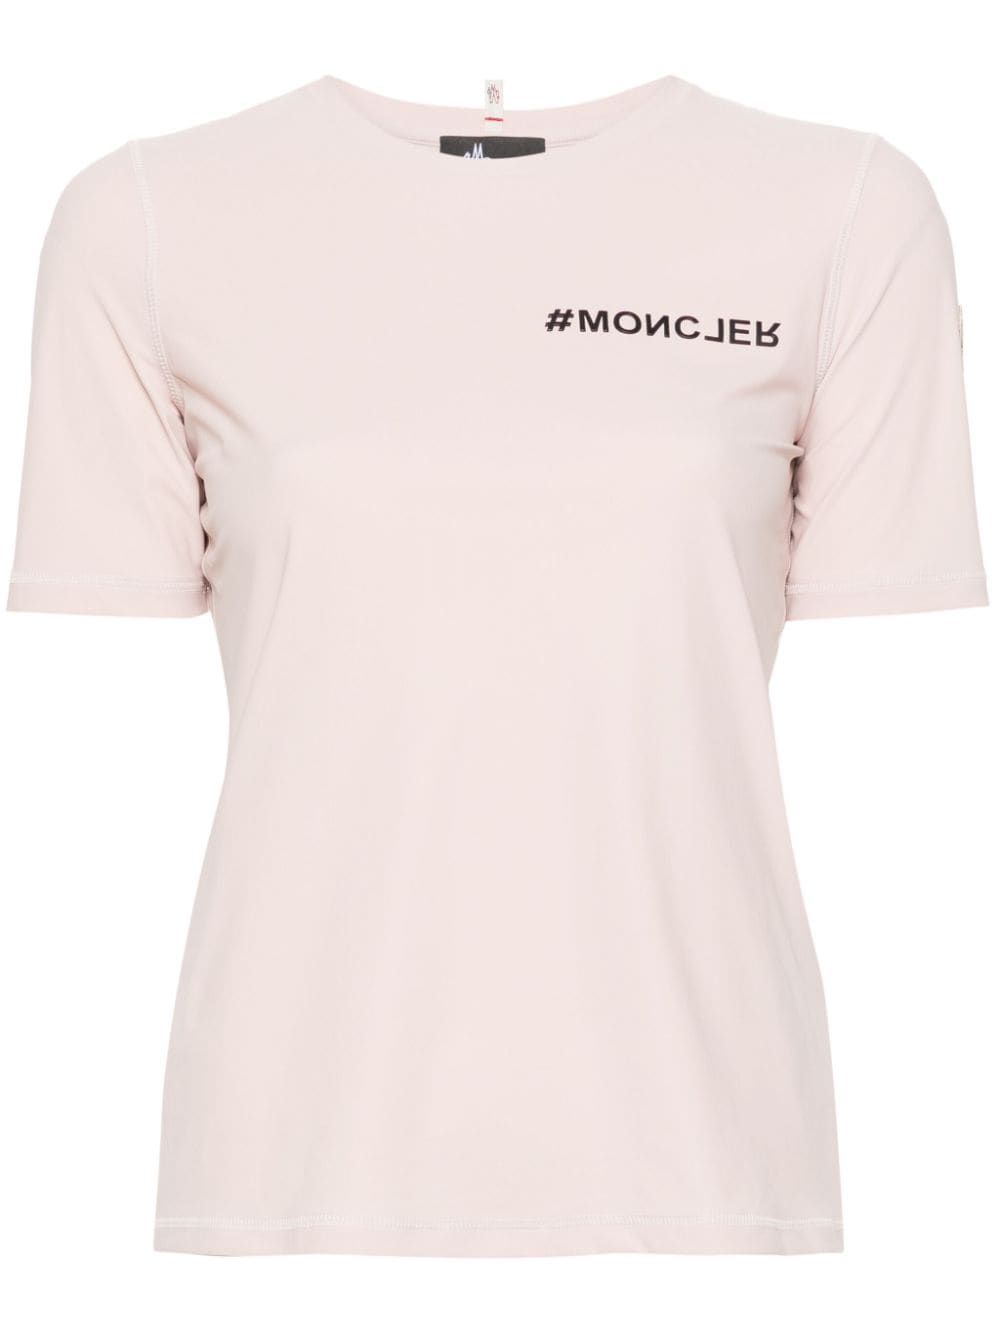 T-shirt dal design elasticizzato rosa chiaro/nero